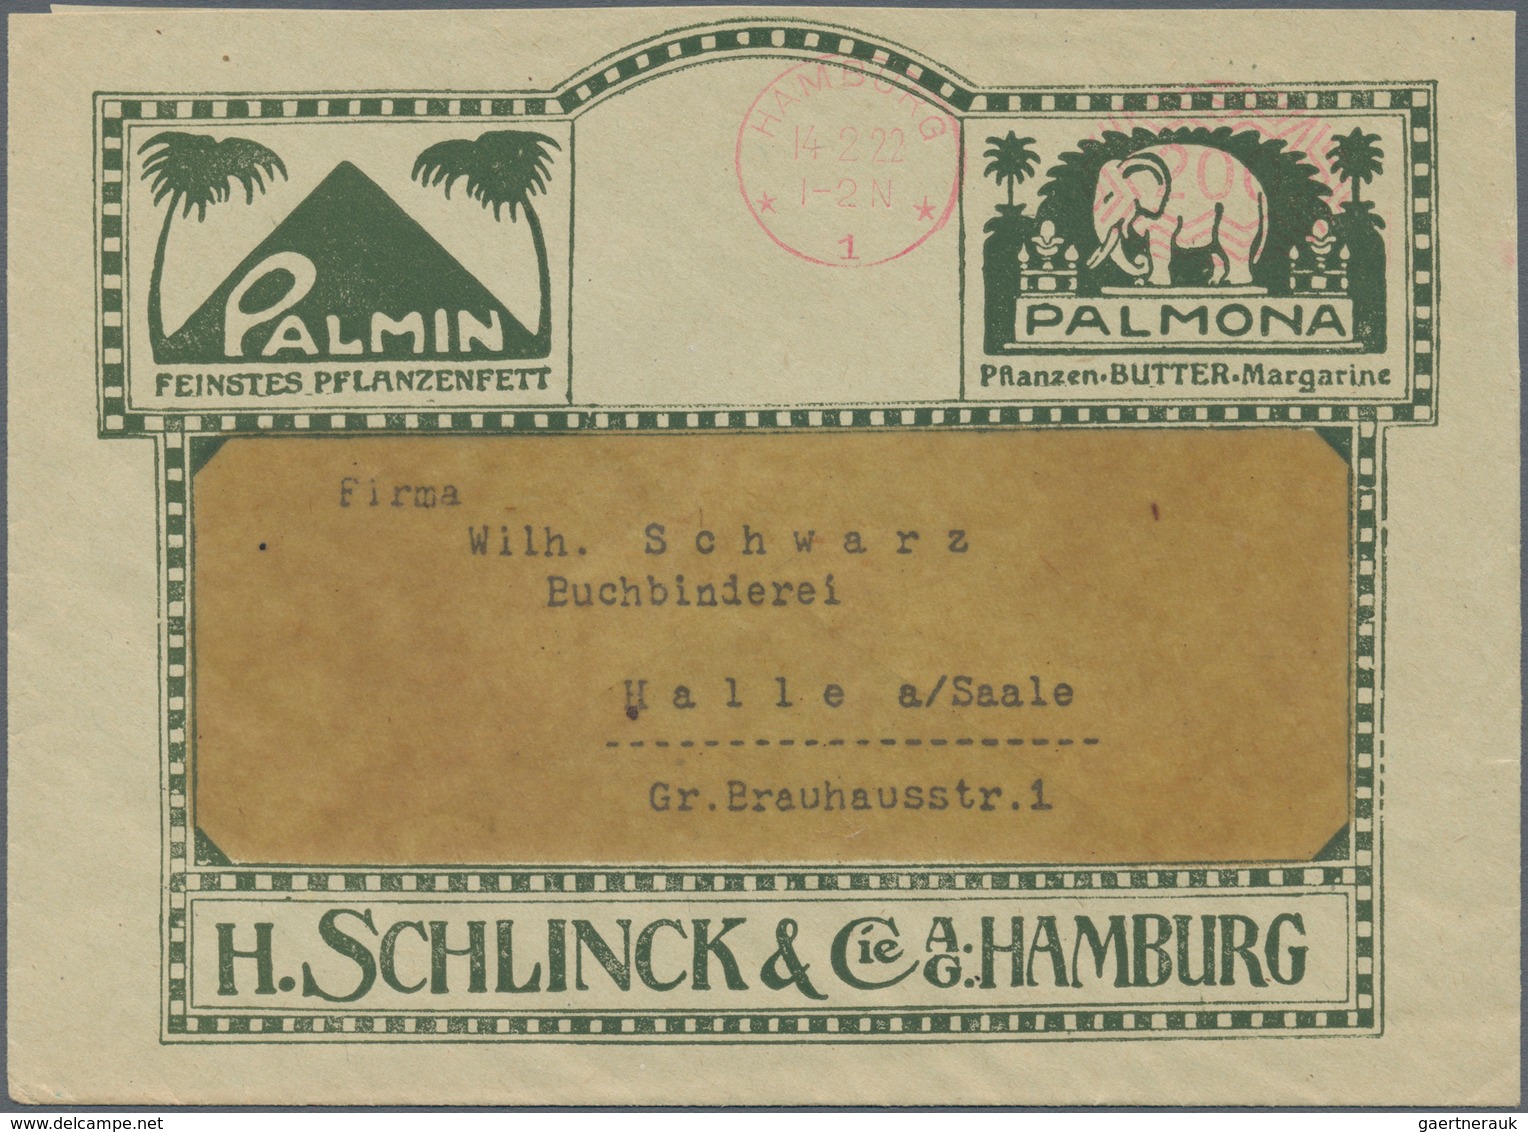 Deutsches Reich - Inflation: 1921-1923, Freistempel, sortenreiche Partie mit geschätzt über 500 Bele